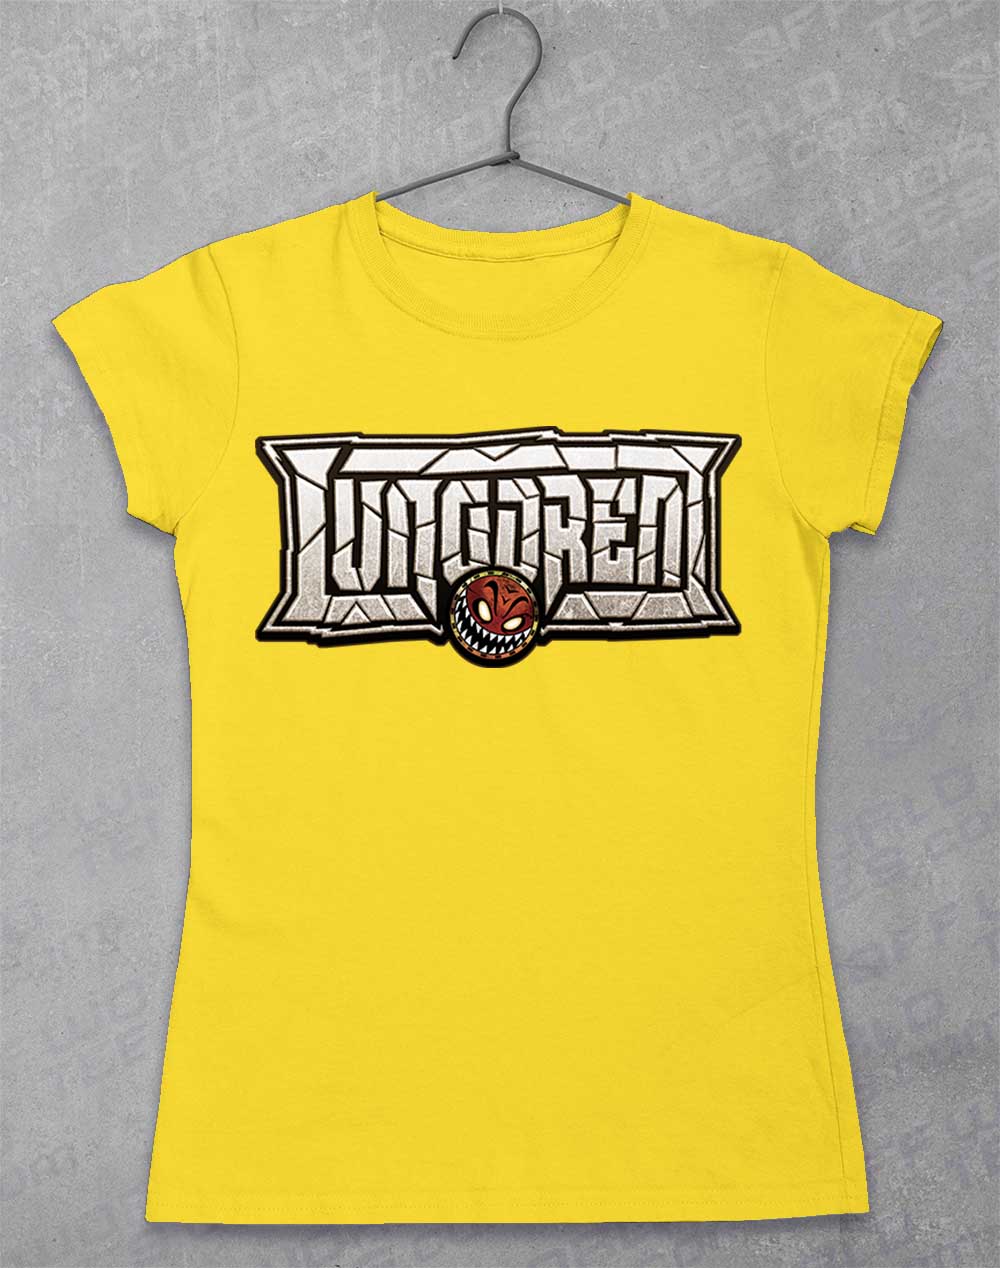 Daisy - LUNGDREN Smashed Logo Women's T-Shirt